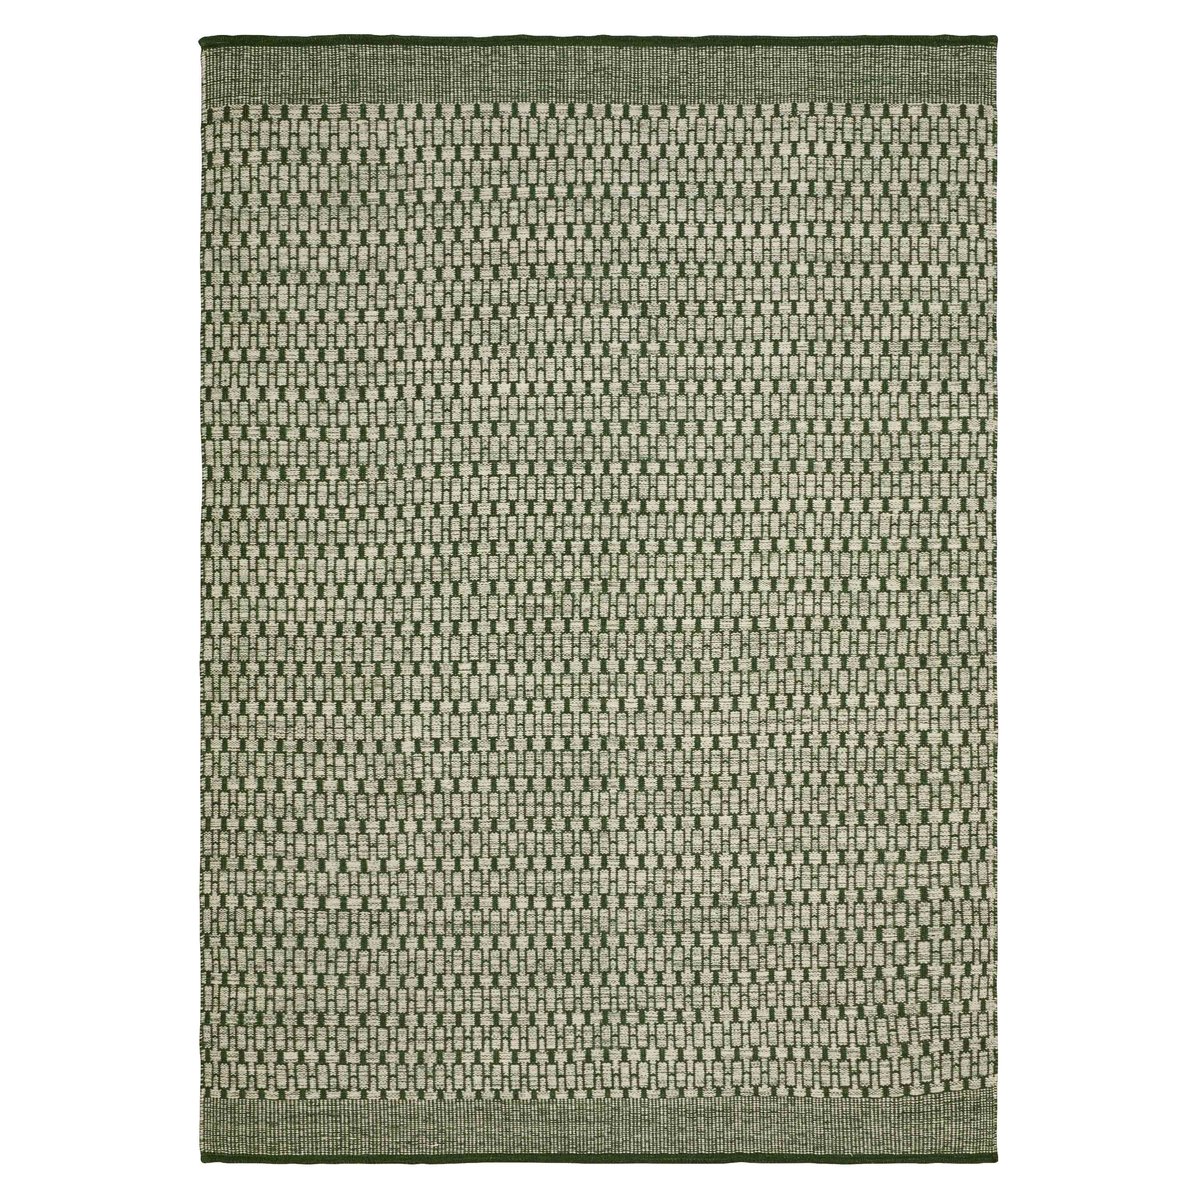 Chhatwal & Jonsson Mahi vloerkleed 200x300 cm Off white-green